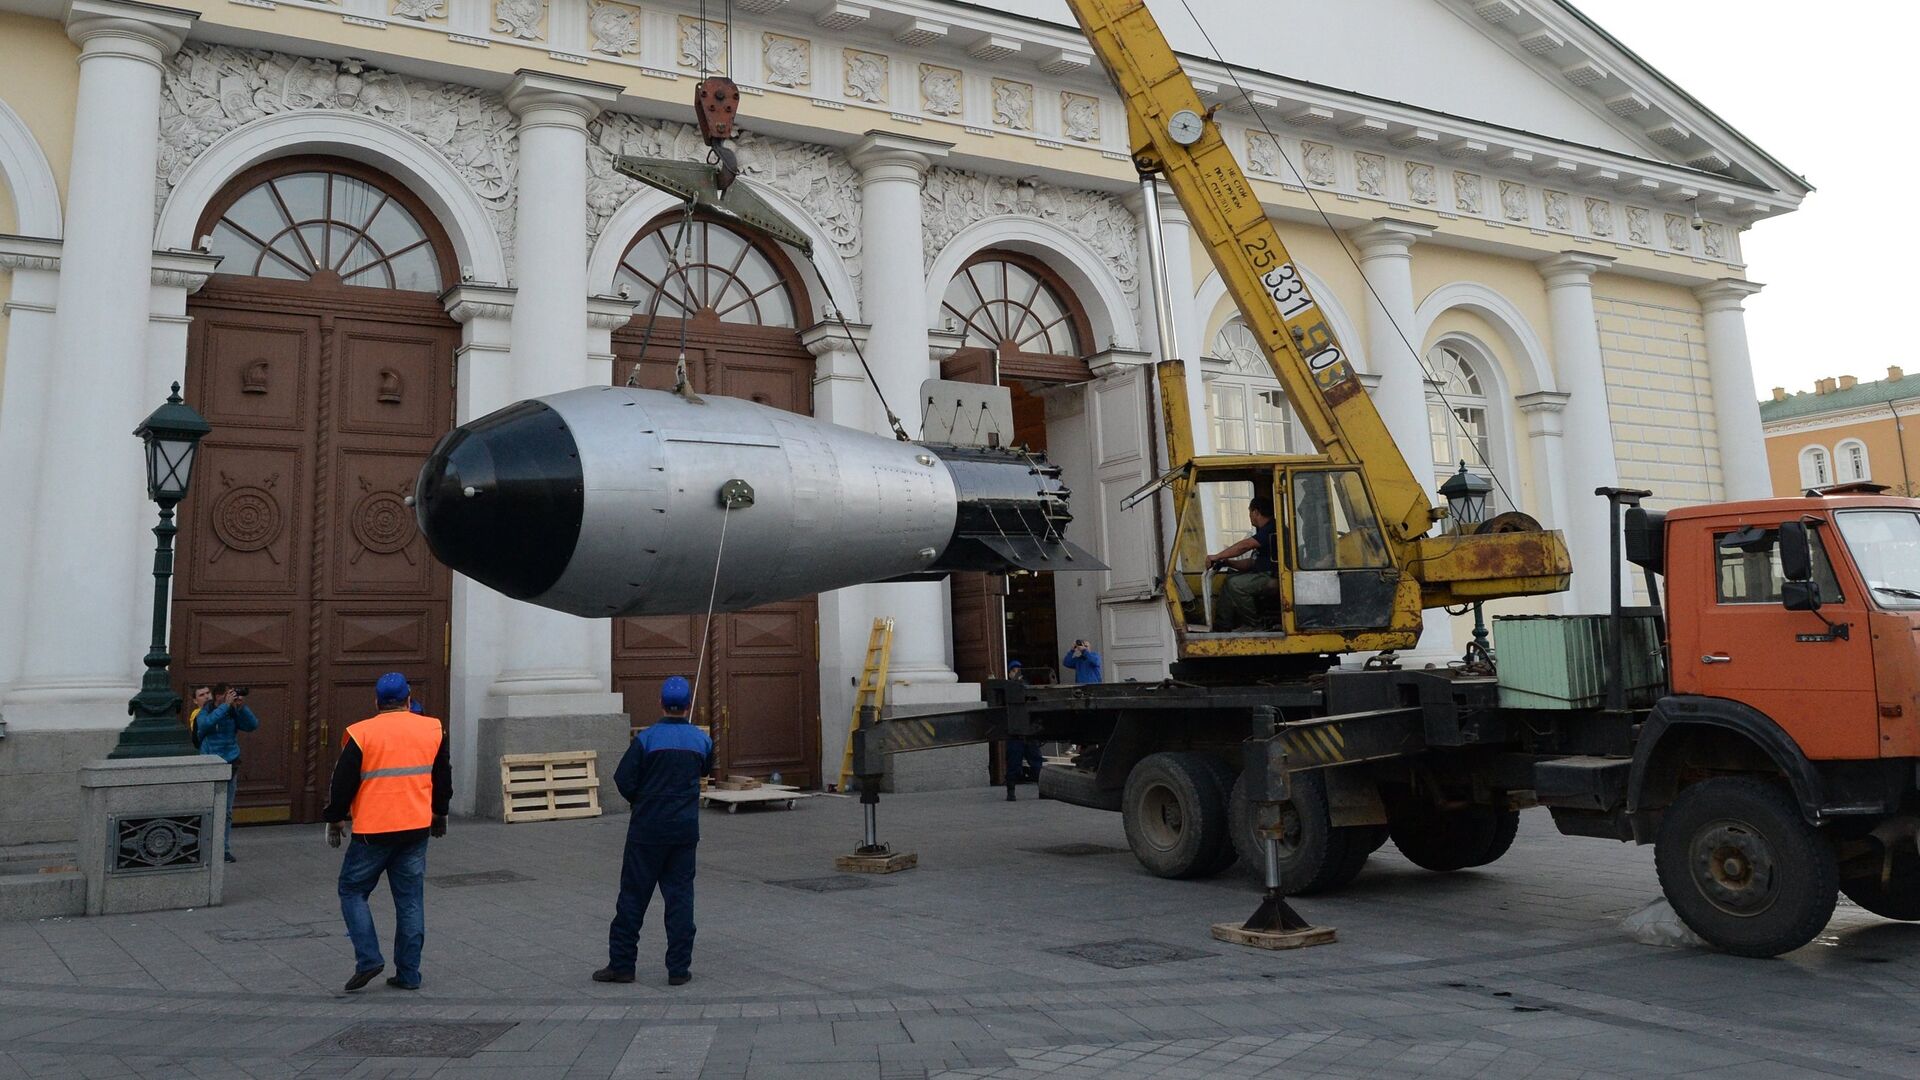 Копия термоядерной Царь-бомбы доставлена в Москву - РИА Новости, 1920, 30.10.2021